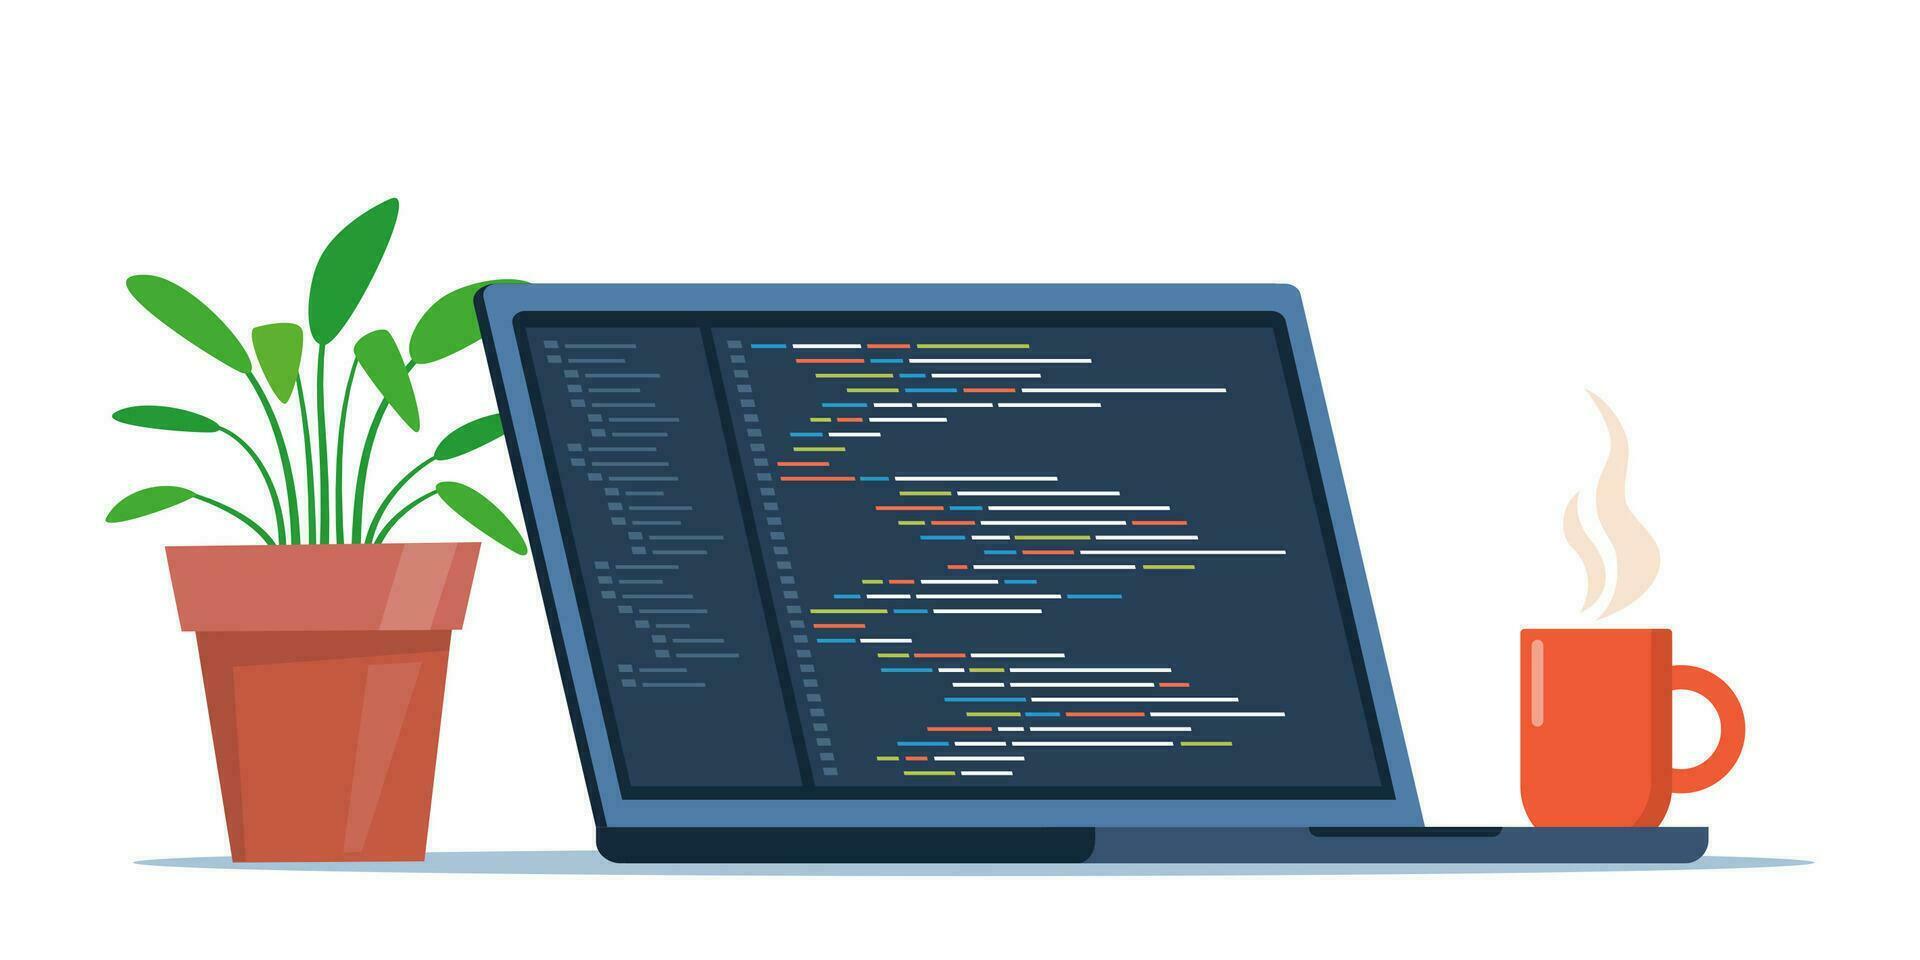 laptop met kop van koffie en fabriek in pot. werkplaats van codeur, online programmeur. codering en programmeren, ontwikkelen sites gebruik makend van speciaal taal. vector illustratie.